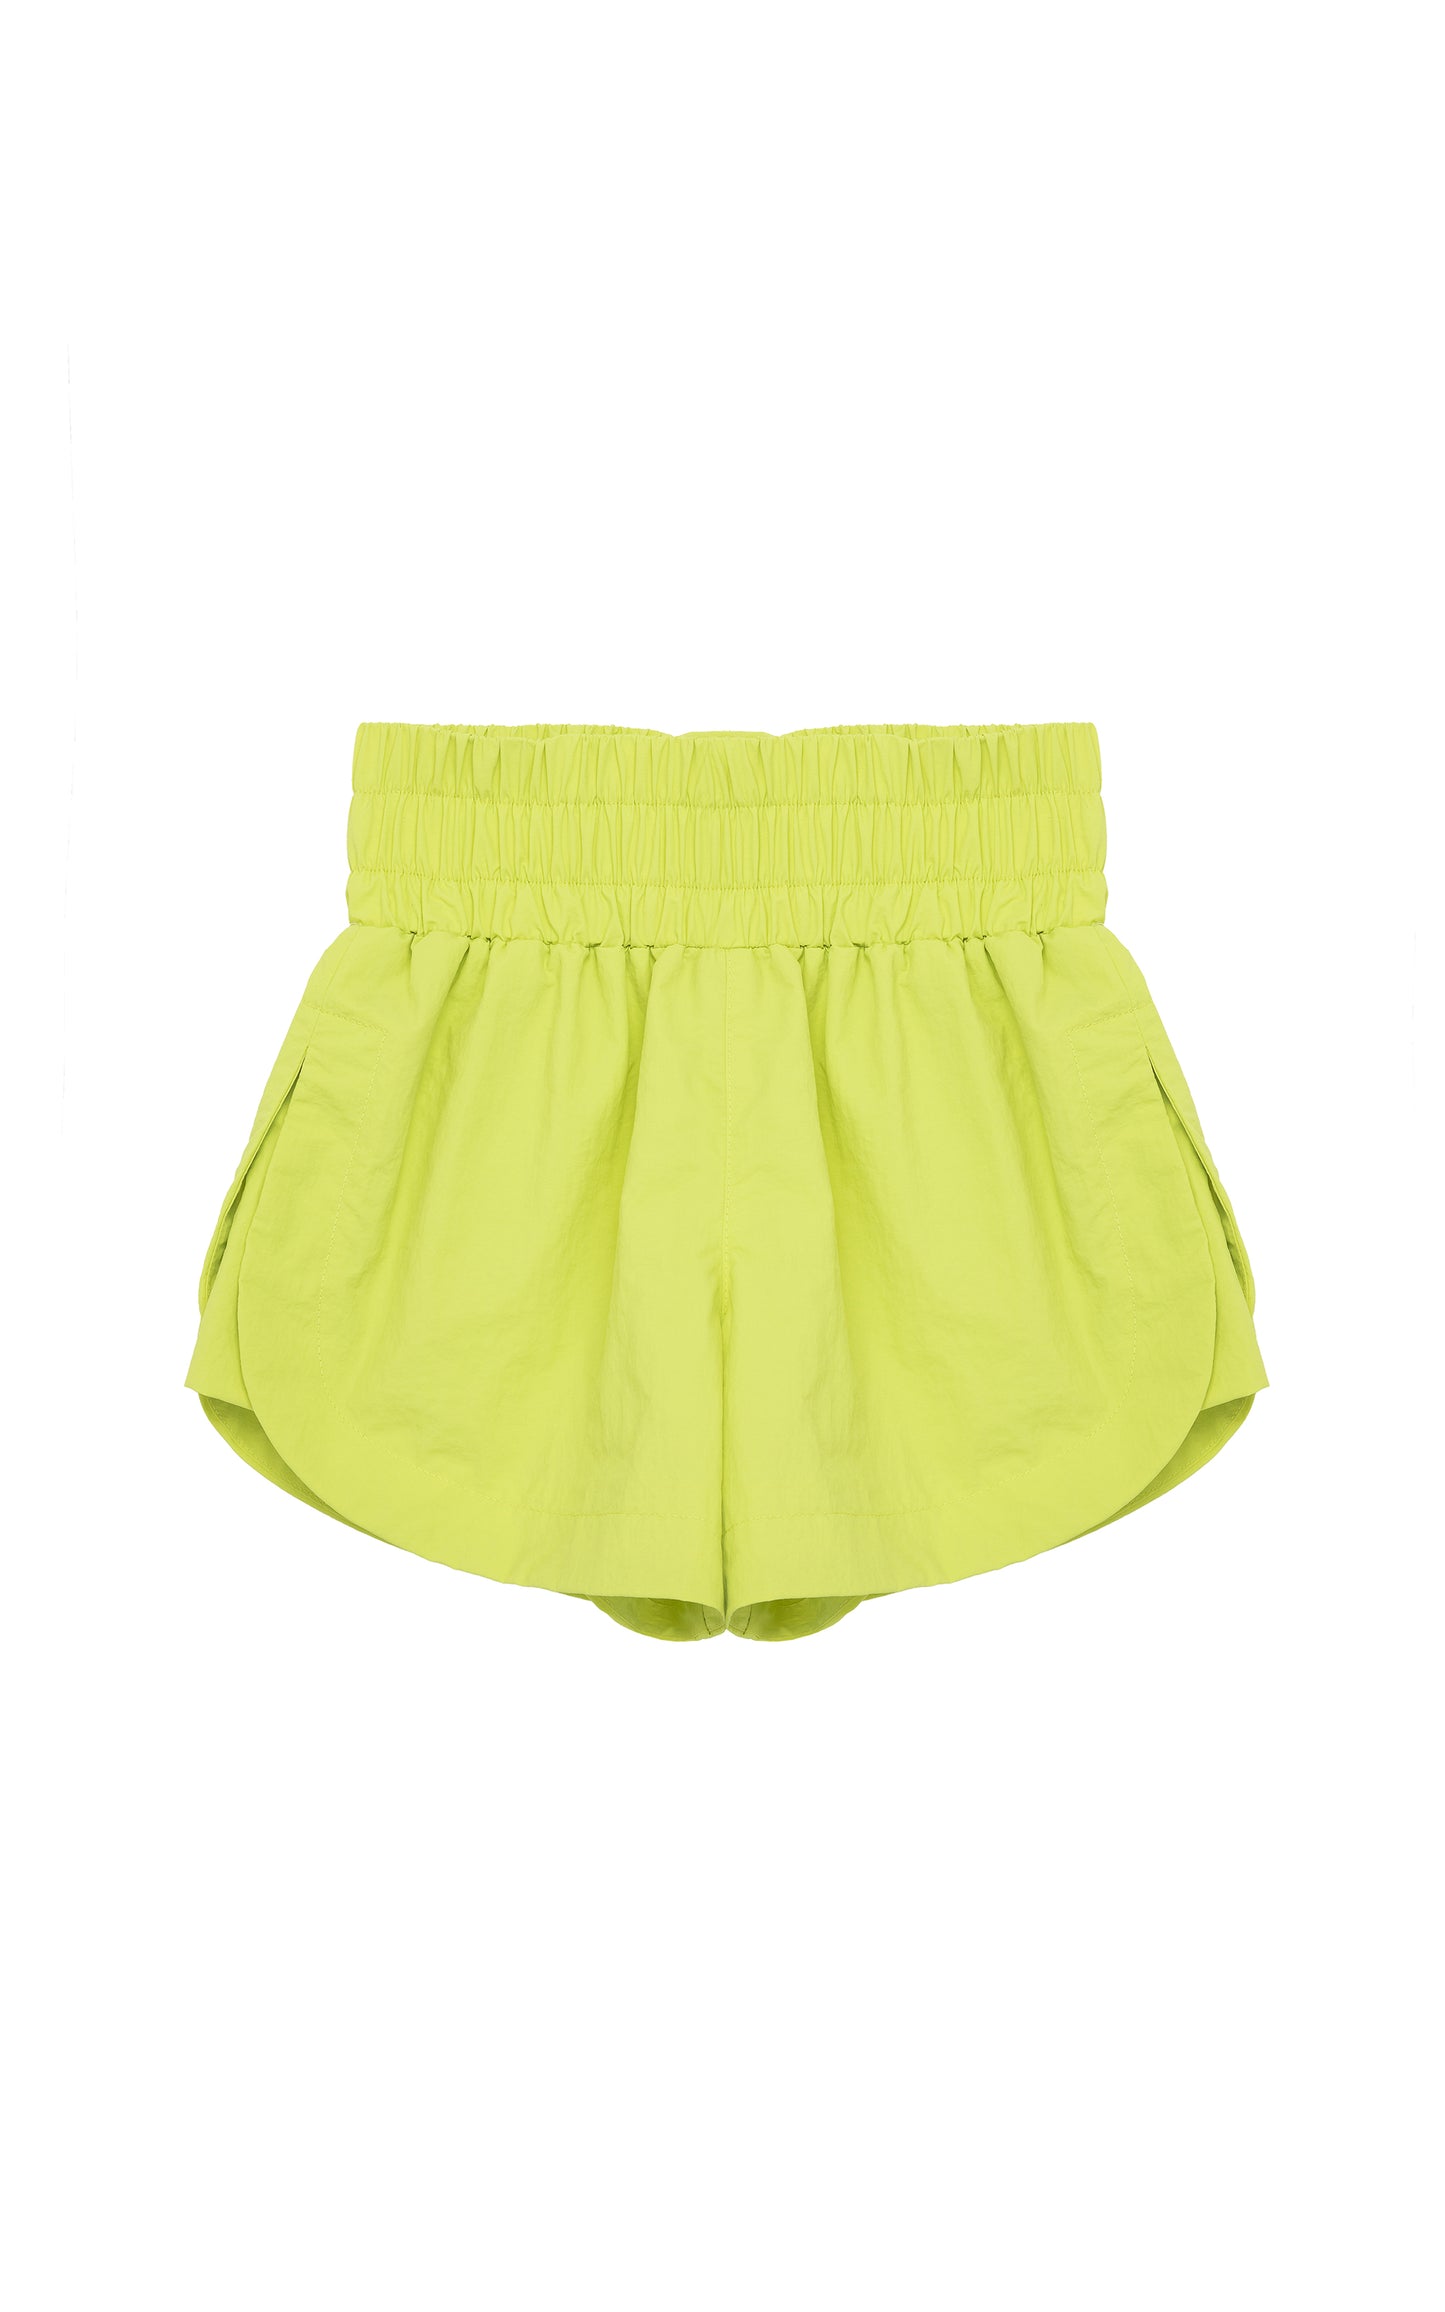 Habitual Girl Nylon Neon Pull On Shorts 7/8 short